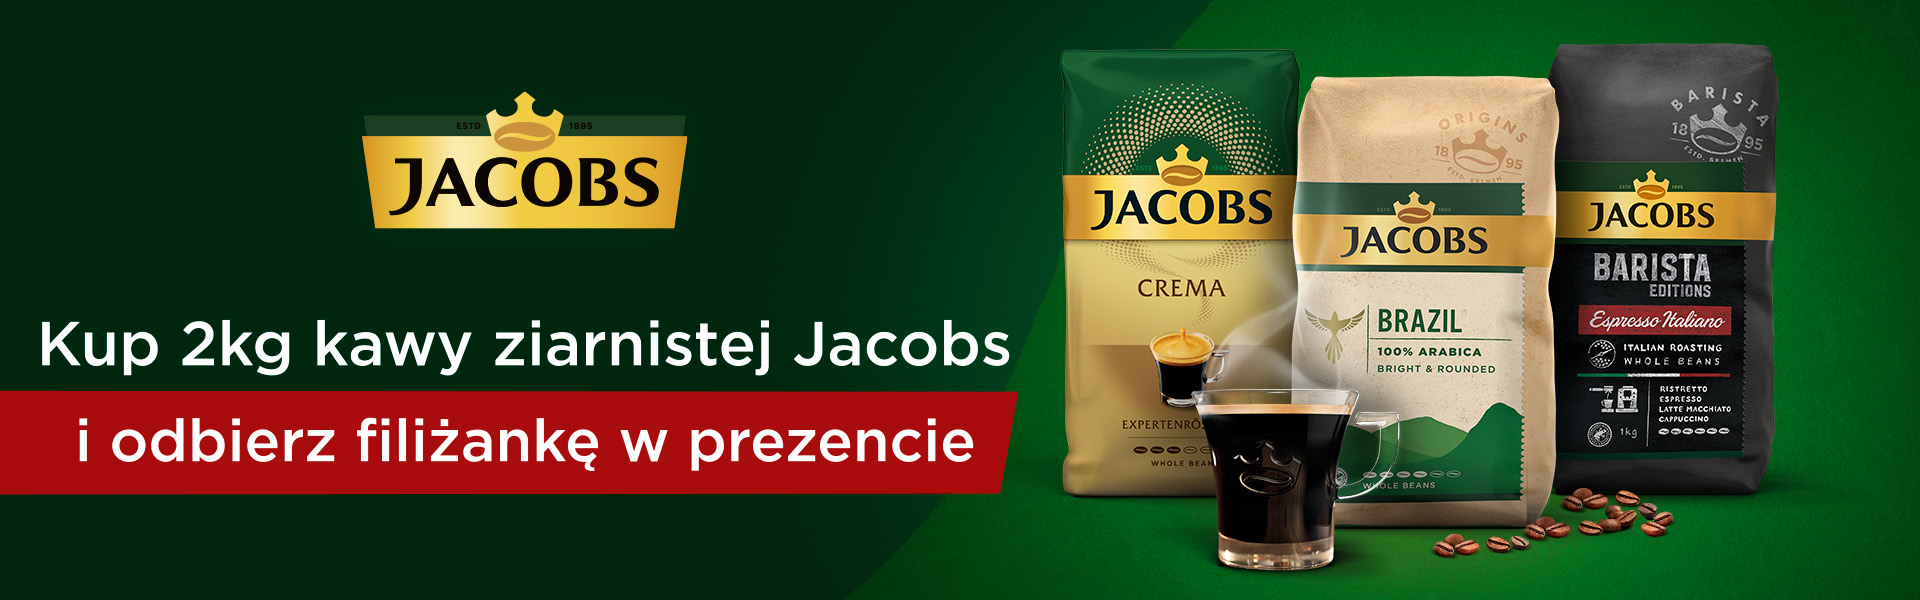 Kawy ziarniste Jacobs